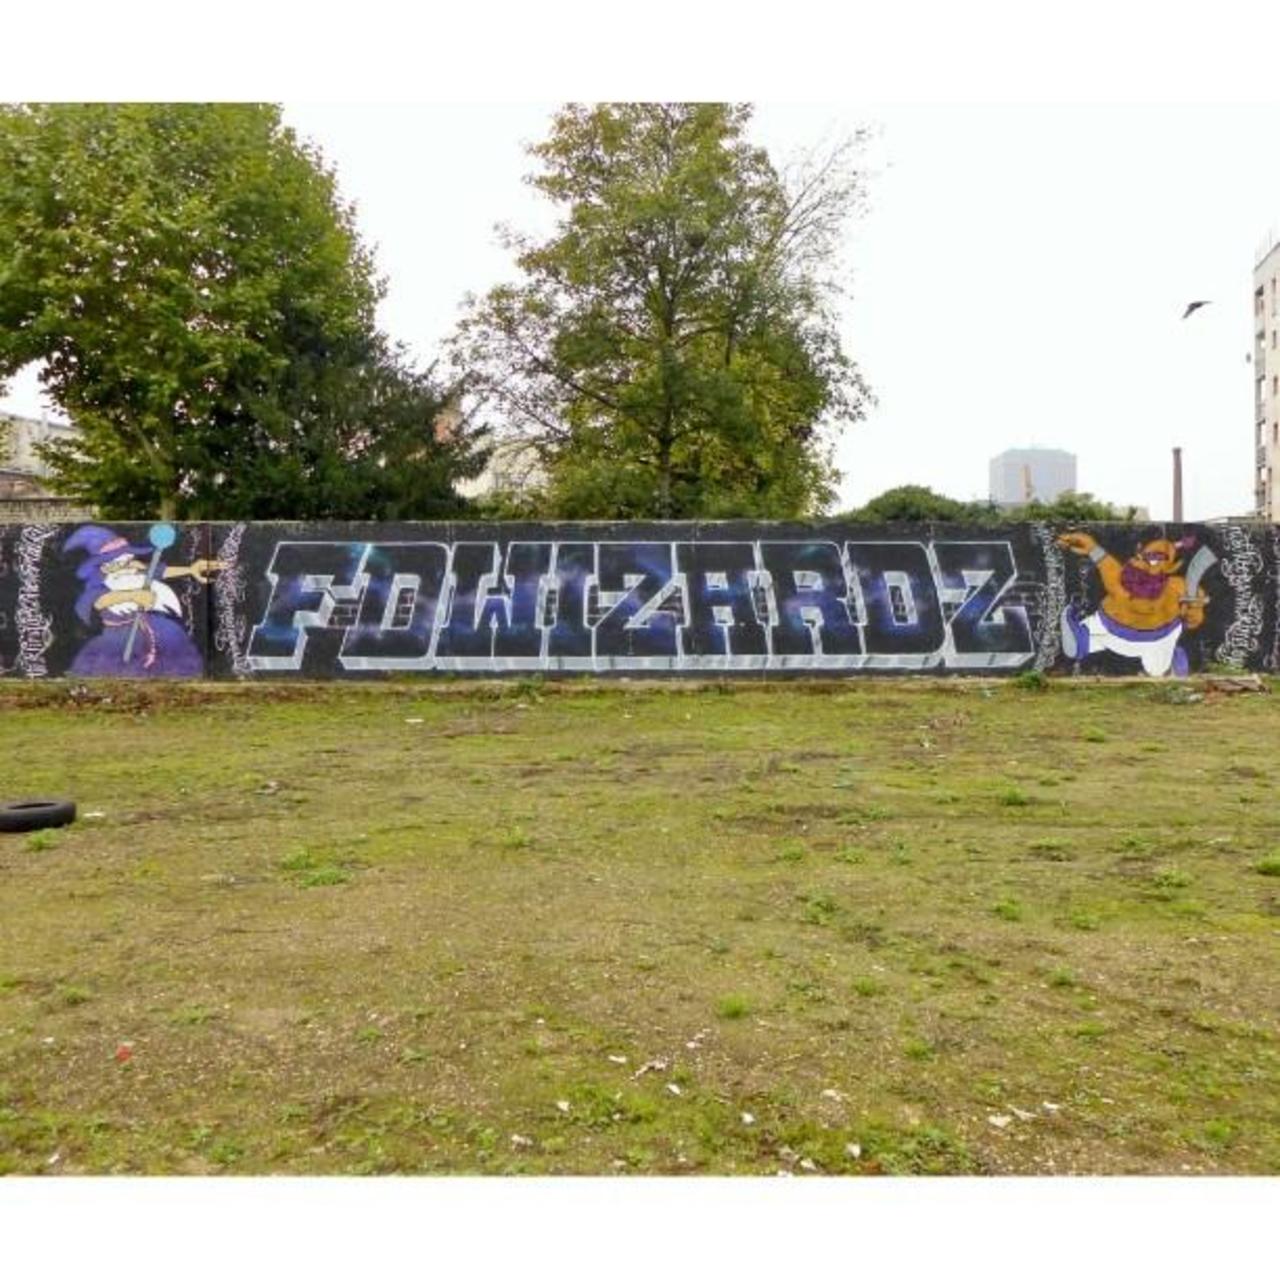 FD WIZARDZ
#FDcrew #massif #streetart #graffiti #graff #art #fatcap #bombing #sprayart #spraycanart #wallart #hands… http://t.co/wlStTVHNcO